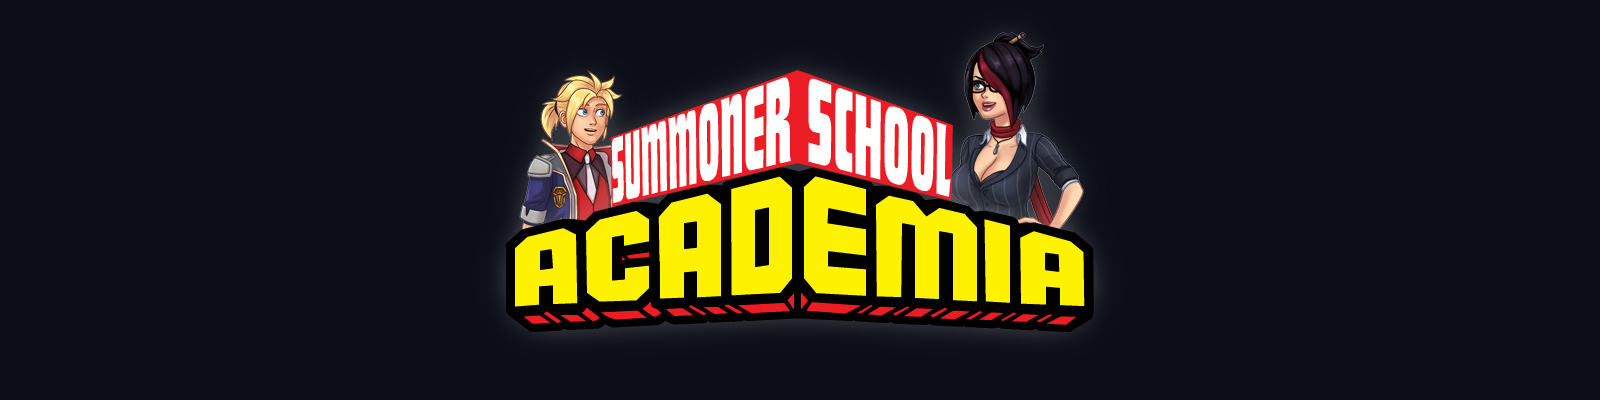 Summoner School Academia poster